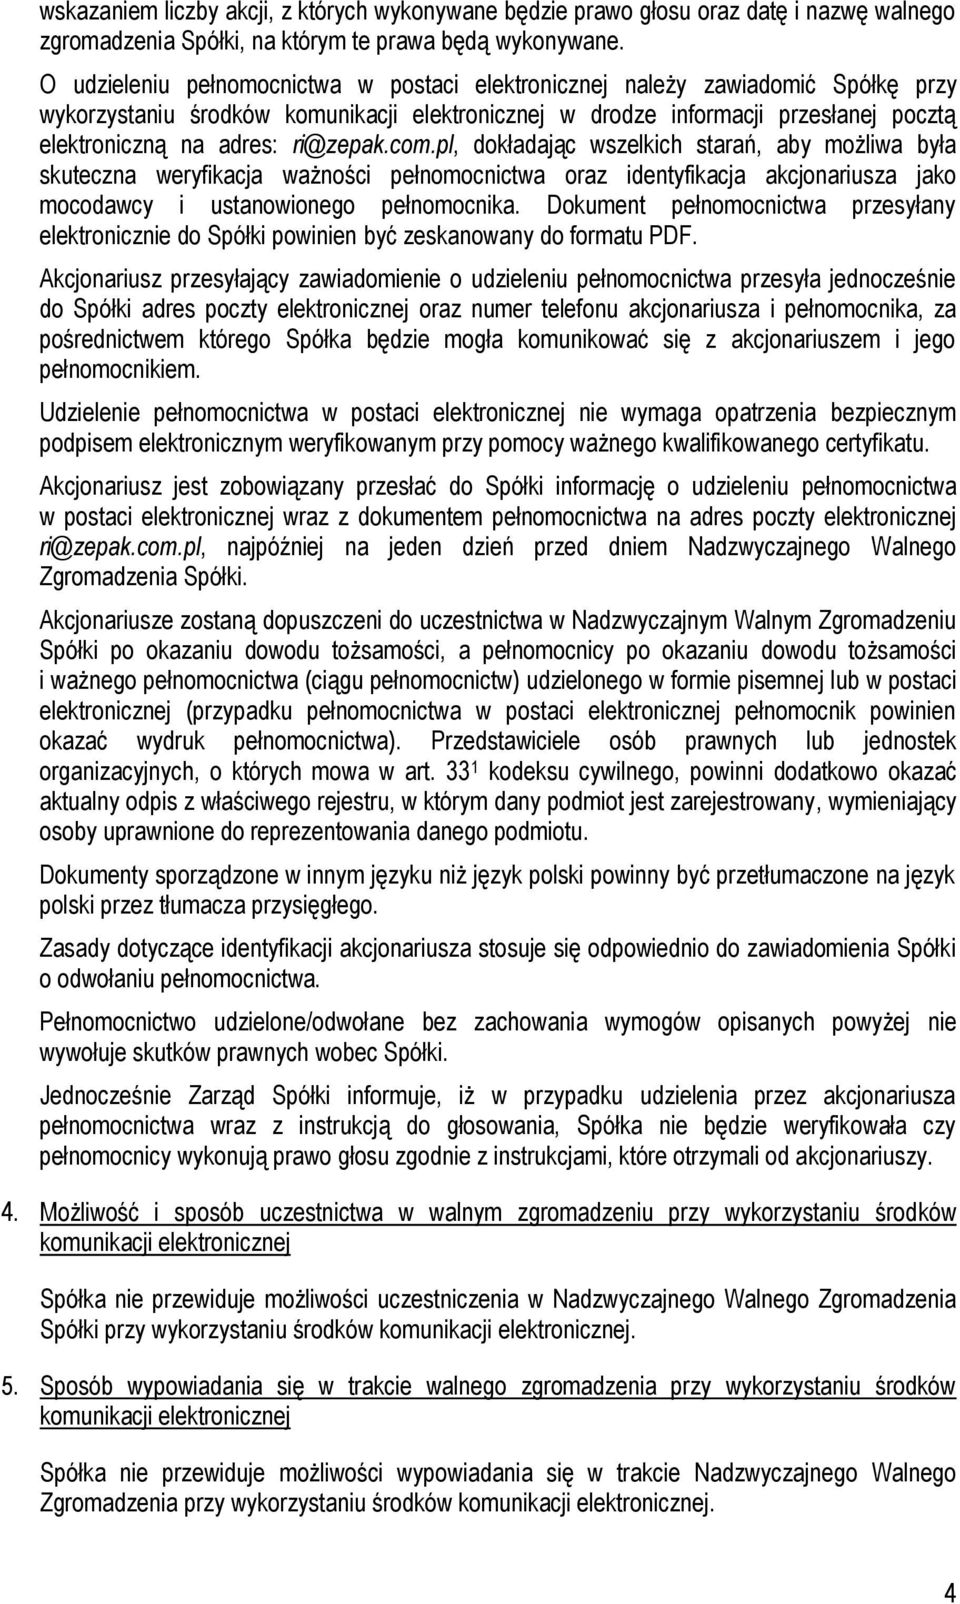 ri@zepak.com.pl, dokładając wszelkich starań, aby możliwa była skuteczna weryfikacja ważności pełnomocnictwa oraz identyfikacja akcjonariusza jako mocodawcy i ustanowionego pełnomocnika.